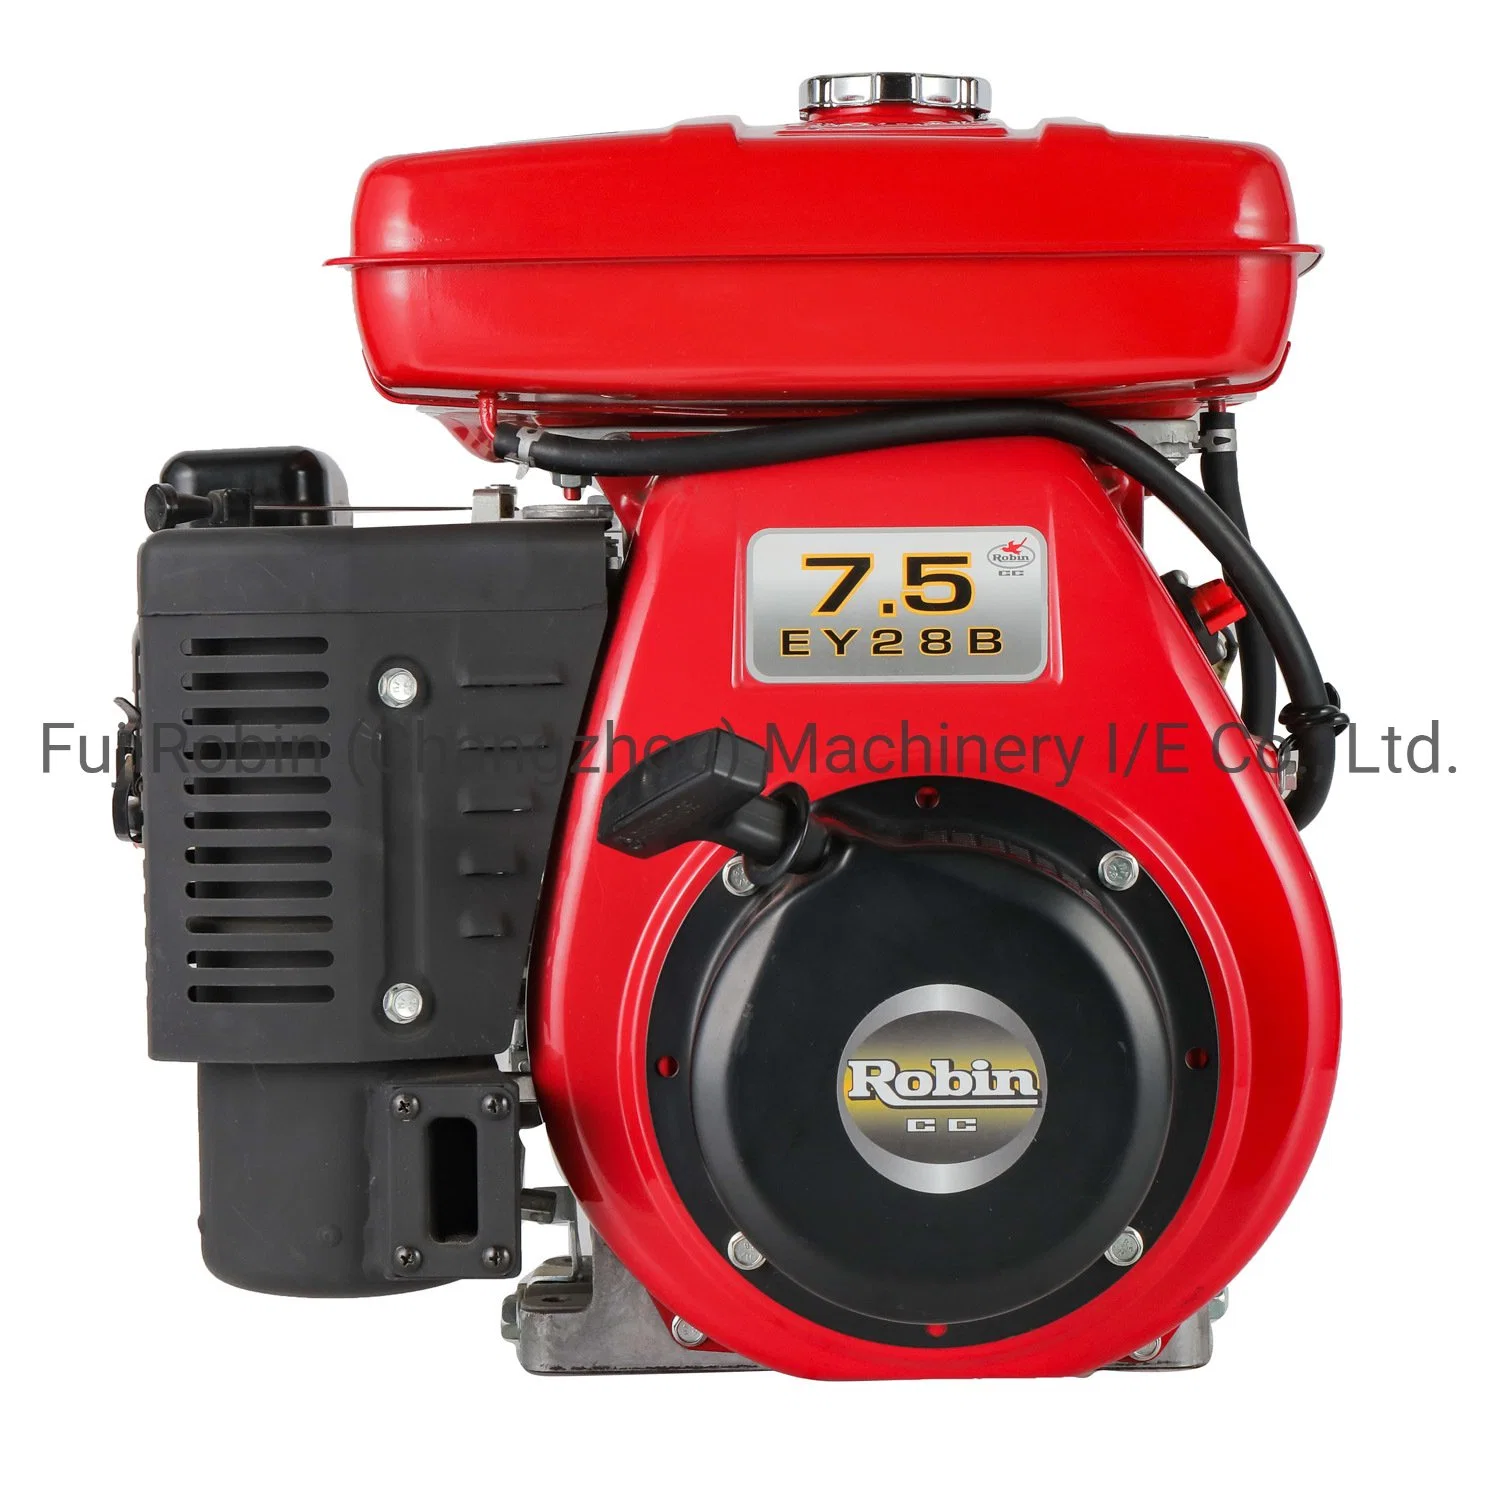 China Factory Red Color luftgekühlter 8HP Ey28b/D Robin Benzinmotor Robin Gasoline Motor